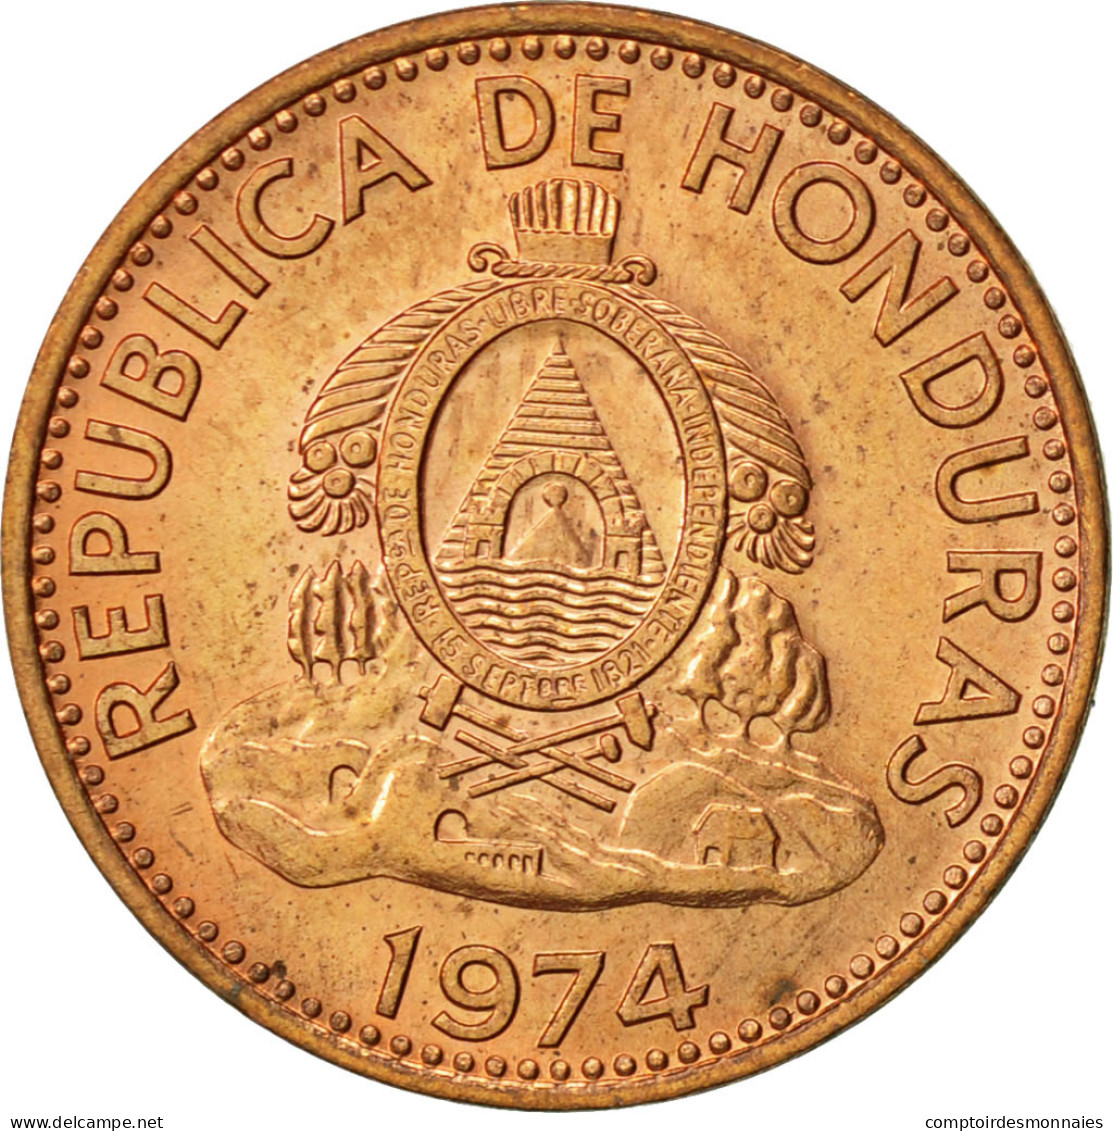 Monnaie, Honduras, Centavo, 1974, SUP, Copper Plated Steel, KM:77a - Honduras